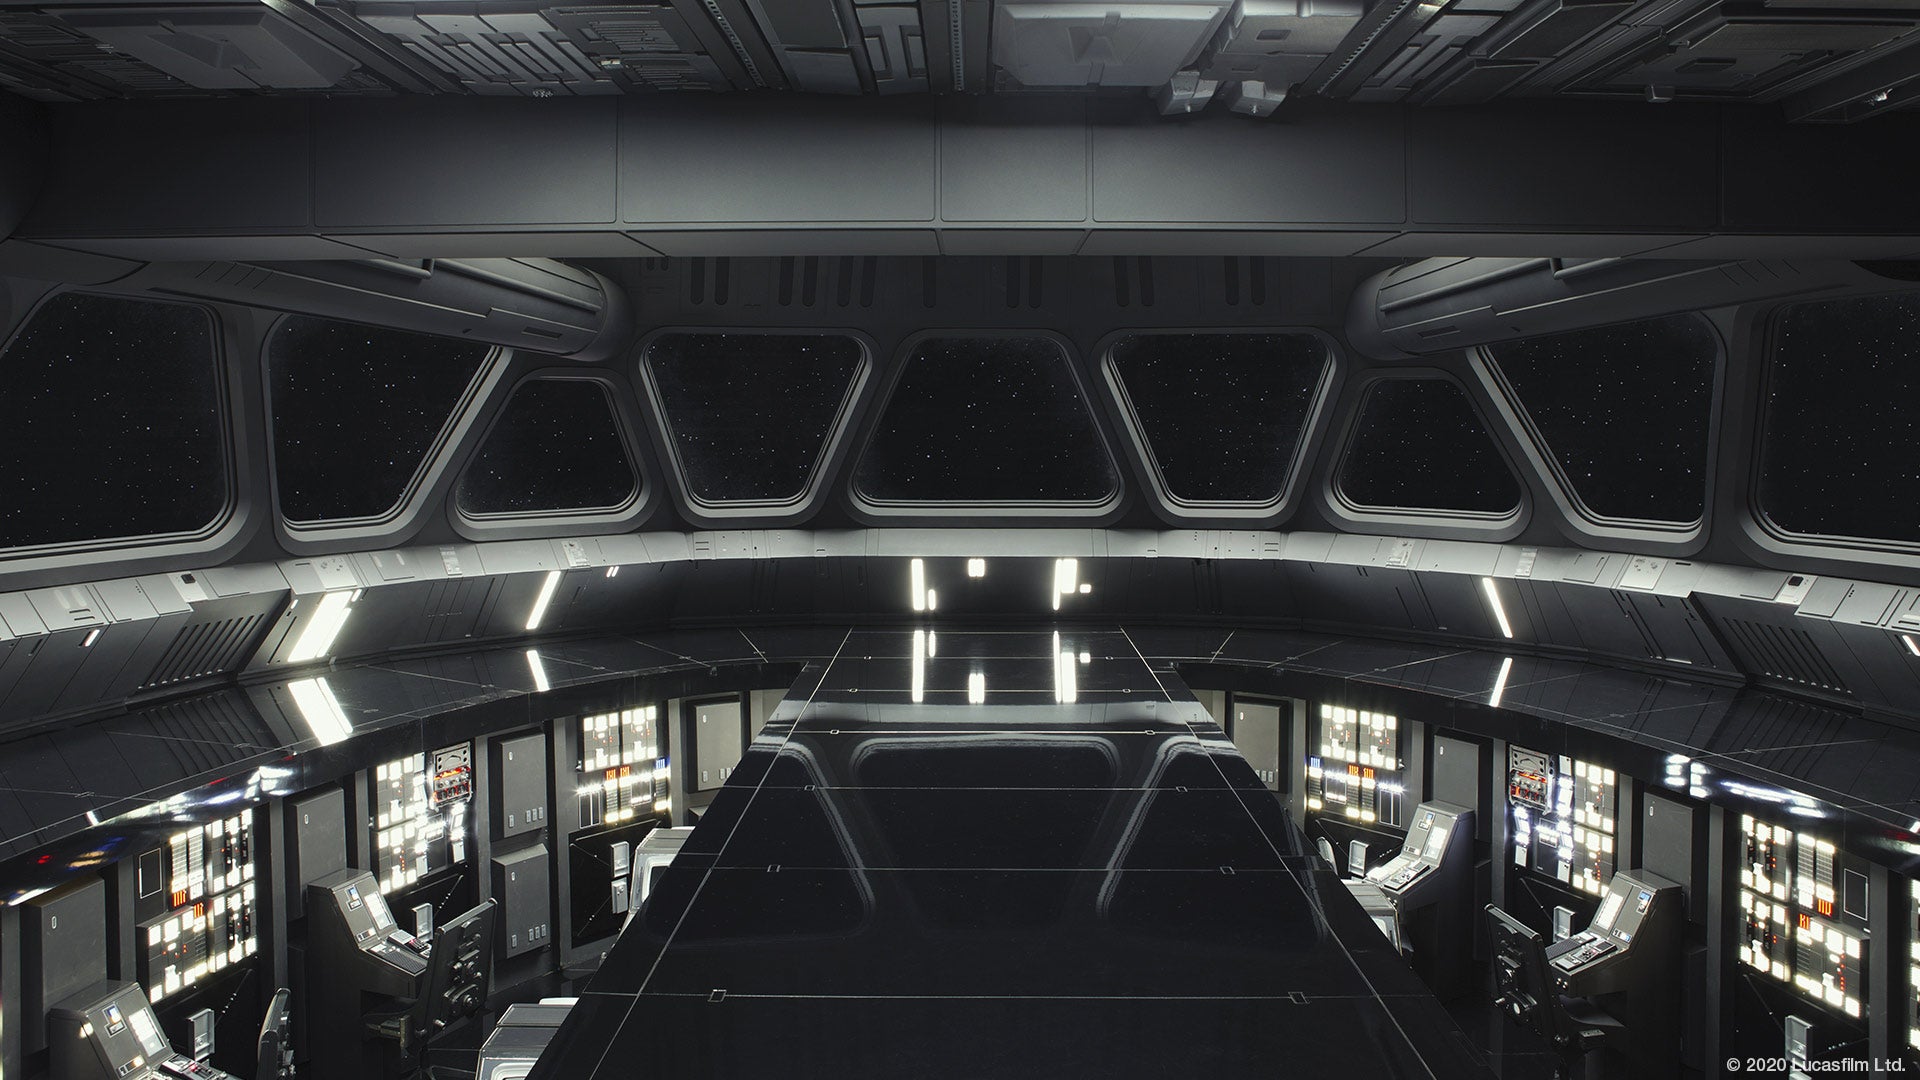 Star Destroyer Bridge chắc chắn sẽ làm bạn choáng ngợp bởi quy mô, thiết kế và công nghệ hiện đại của nó. Hãy xem hình ảnh để thấy nguyên vẹn khoảnh khắc tuyệt vời này từ Star Wars.